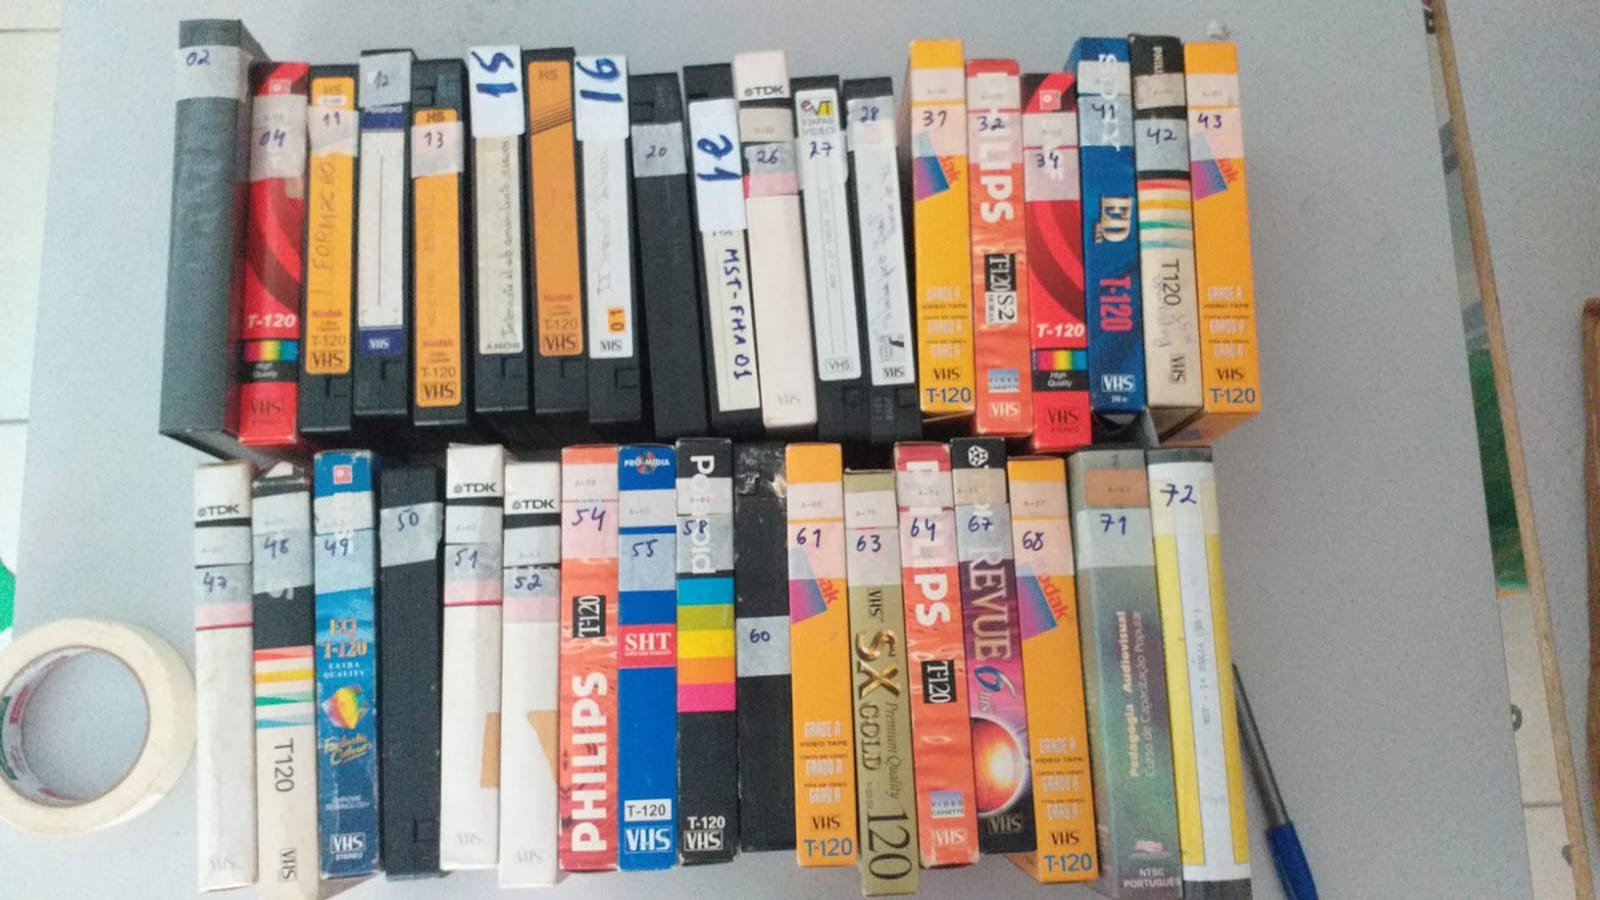 Foto de dezenas de antigas fitas VHS de capas coloridas e numeradas. As fitas estão enfileiradas sobre uma mesa branca, com uma caneta bic azul no canto inferior direito da foto.